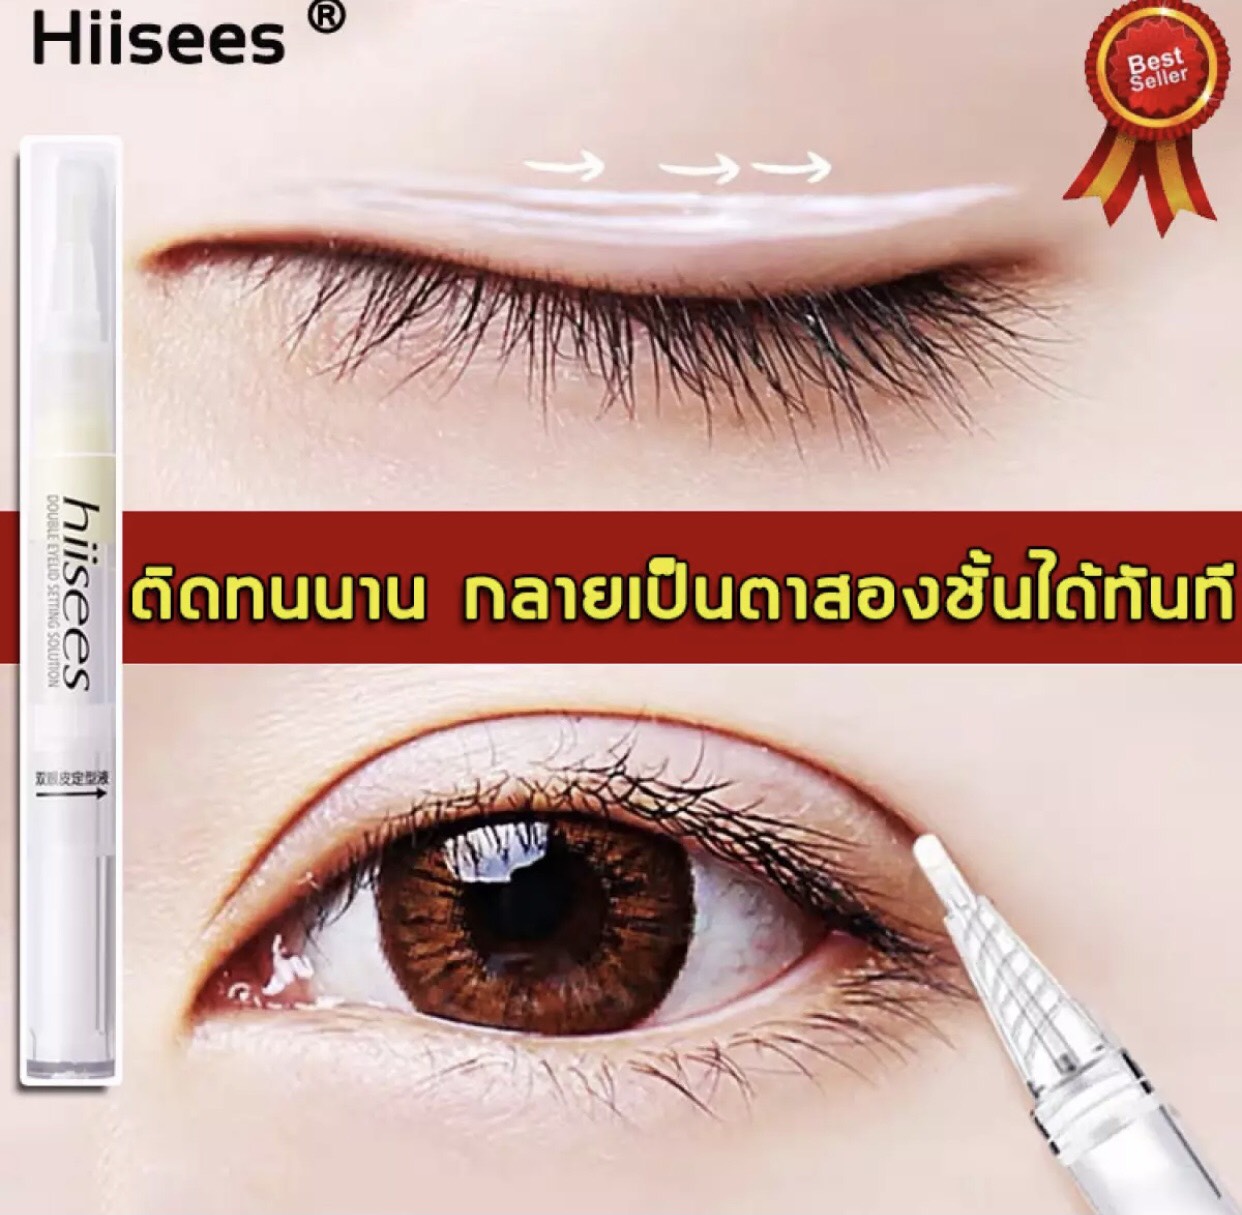 กาวปากกาทำตา 2 ชั้นได้ Hiisees ขนาด 2 g. กาวทำตา 2 ชั้น มาในรูปแท่ปากกาใช้งานง่ายสะดวกมากๆ เนื้อติดทนนาน ใช้ทำตา 2 ชั้น และ ติดขนตาปลอมได้